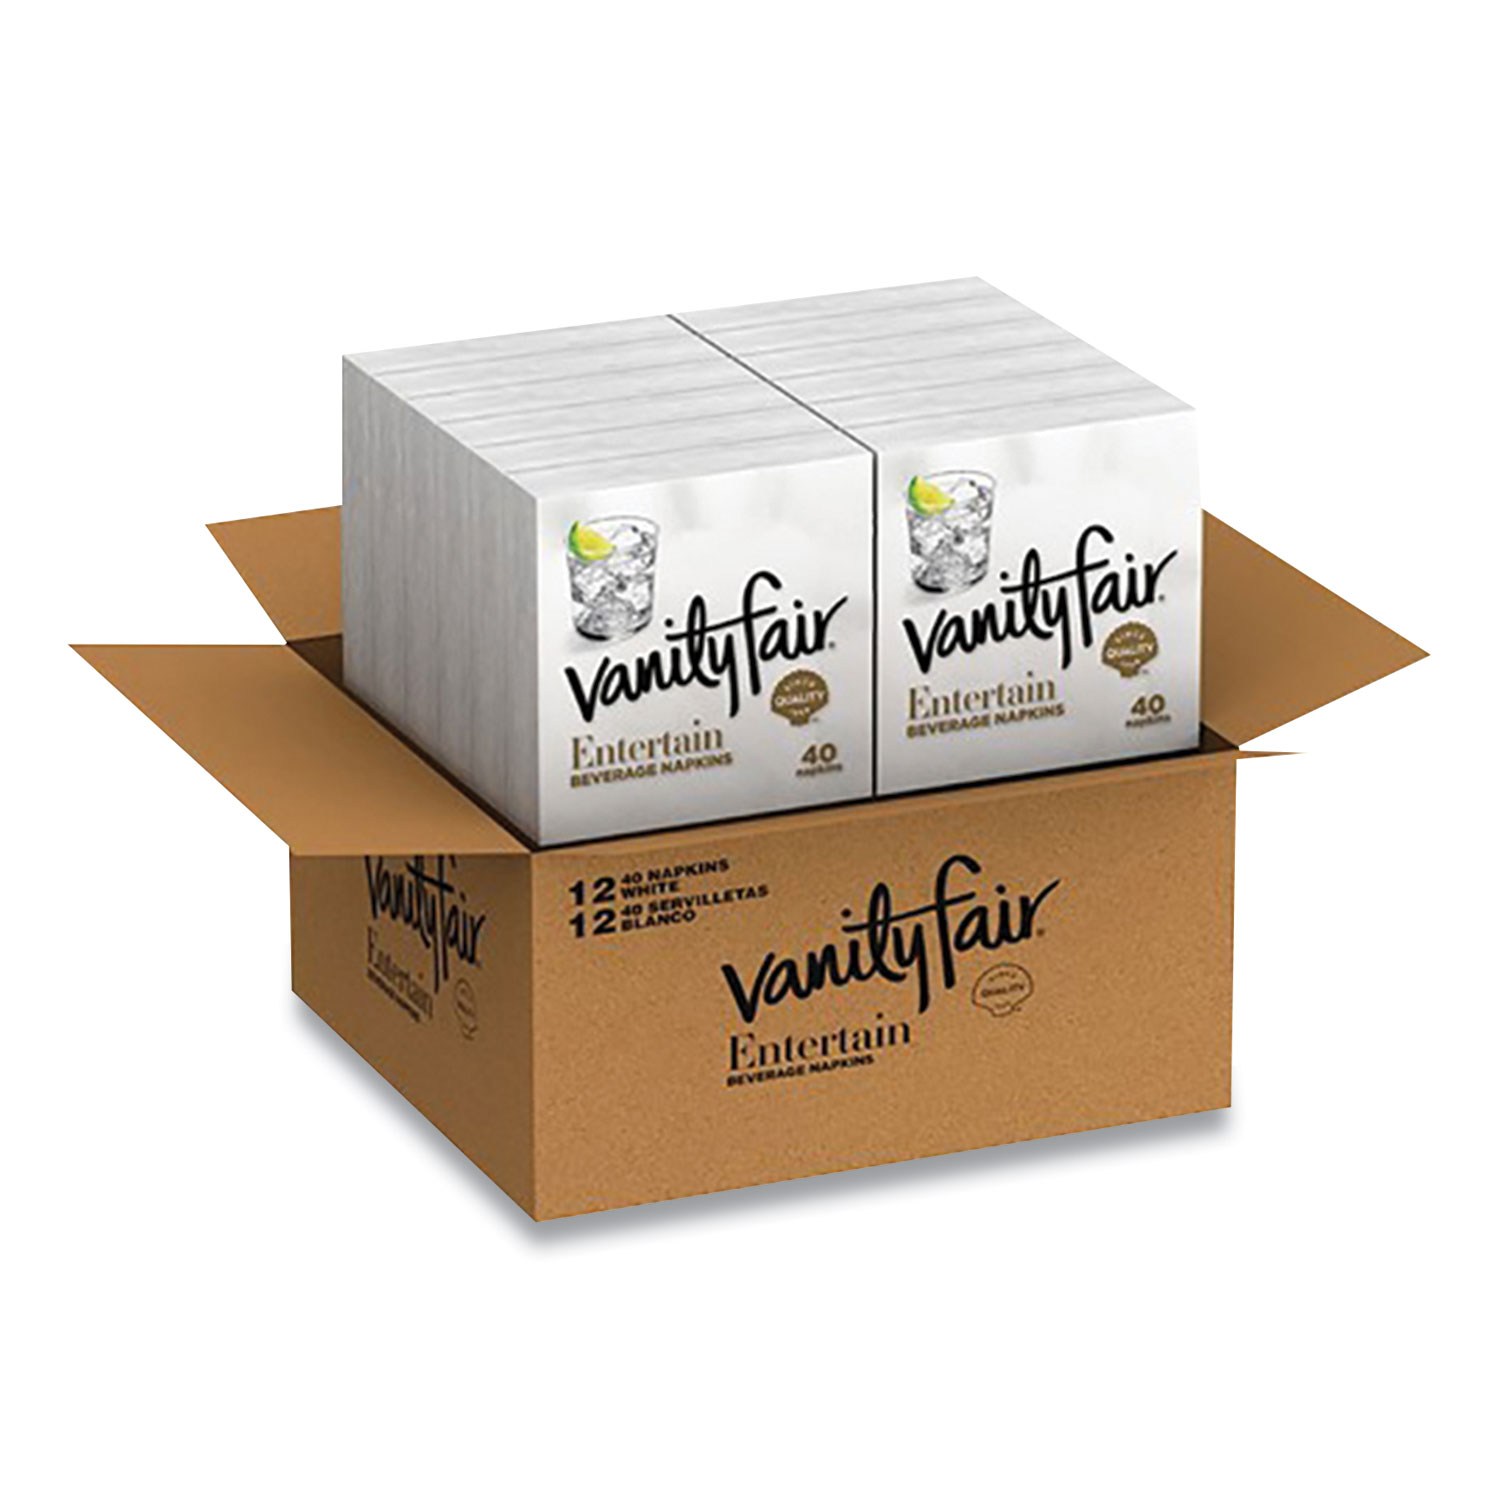  Vanity Fair 35134 Entertain Beverage Napkins, 2-Ply, 9.8 x 9.8, White, 40/Pack, 12 Packs/Carton (VTF24426980) 